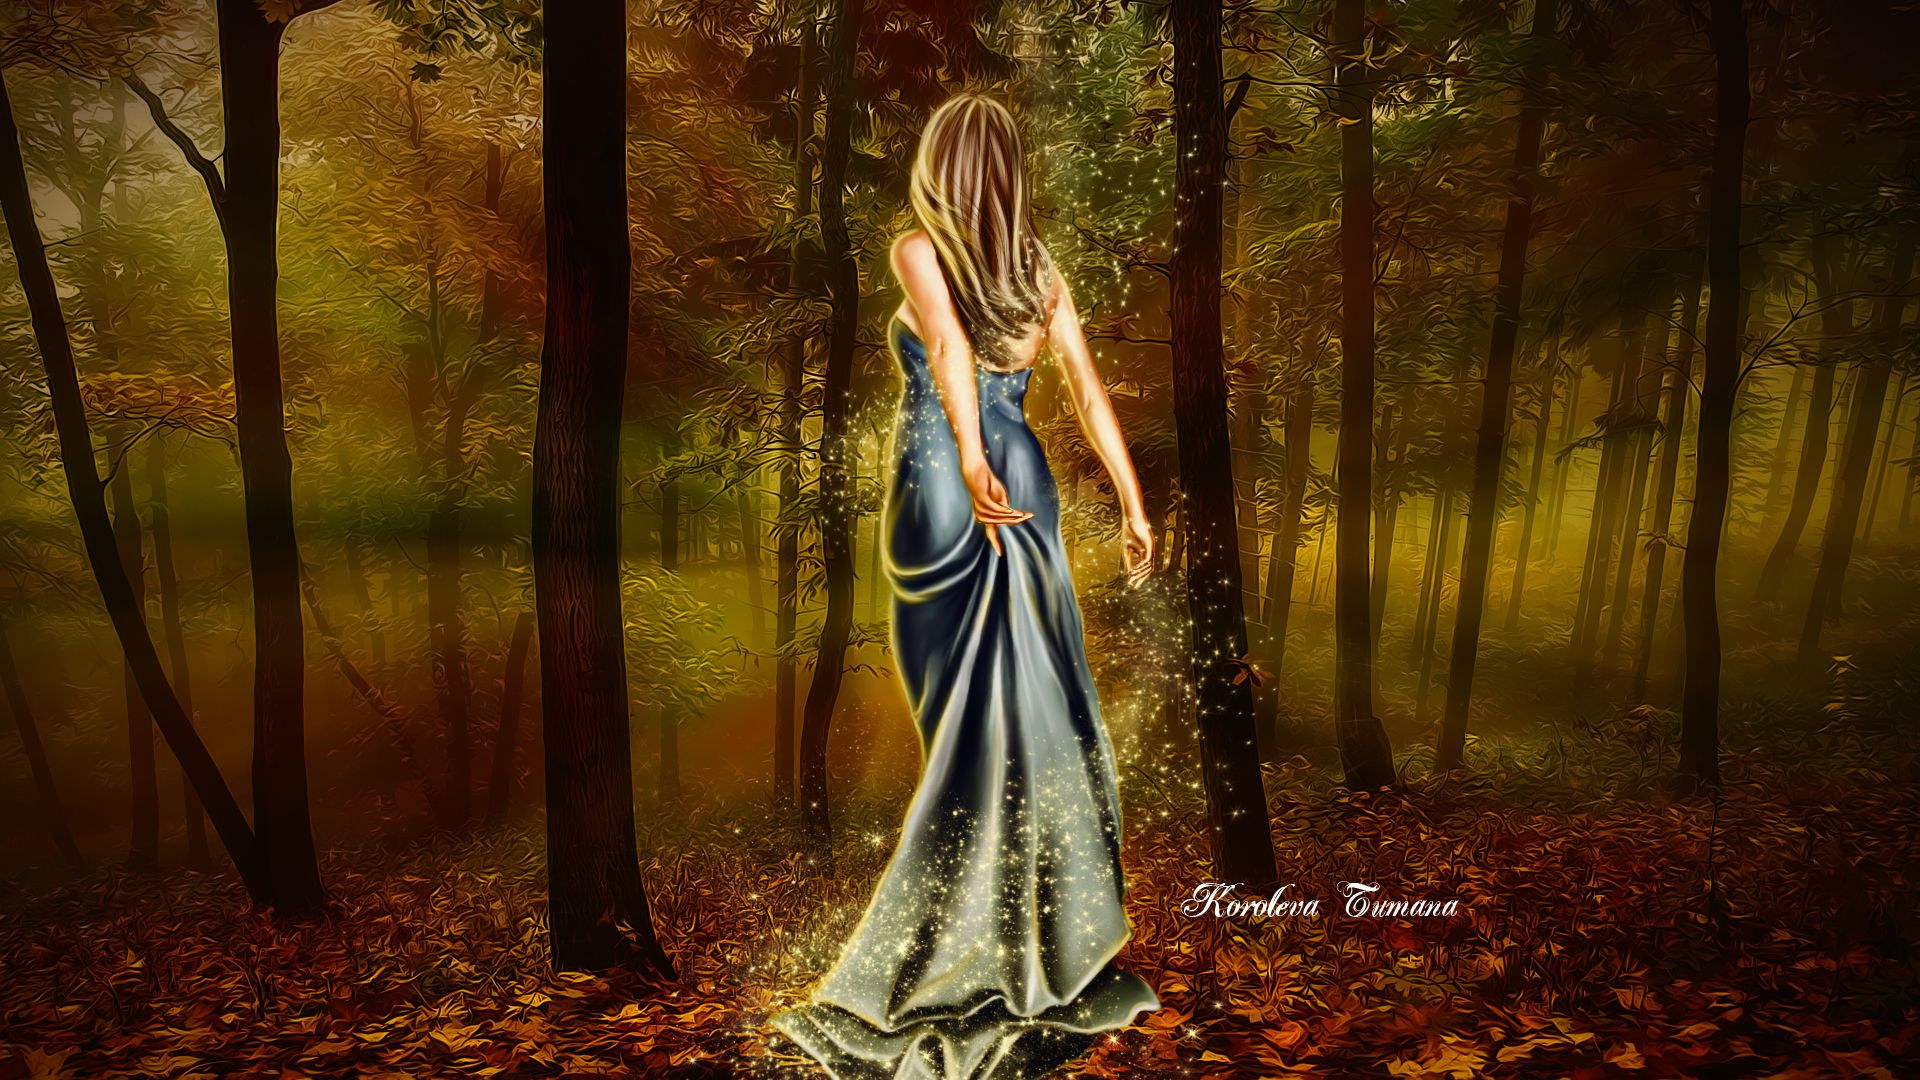 Art girl dress back hair lights magic forest trees leaves autumn wallpaperx1080